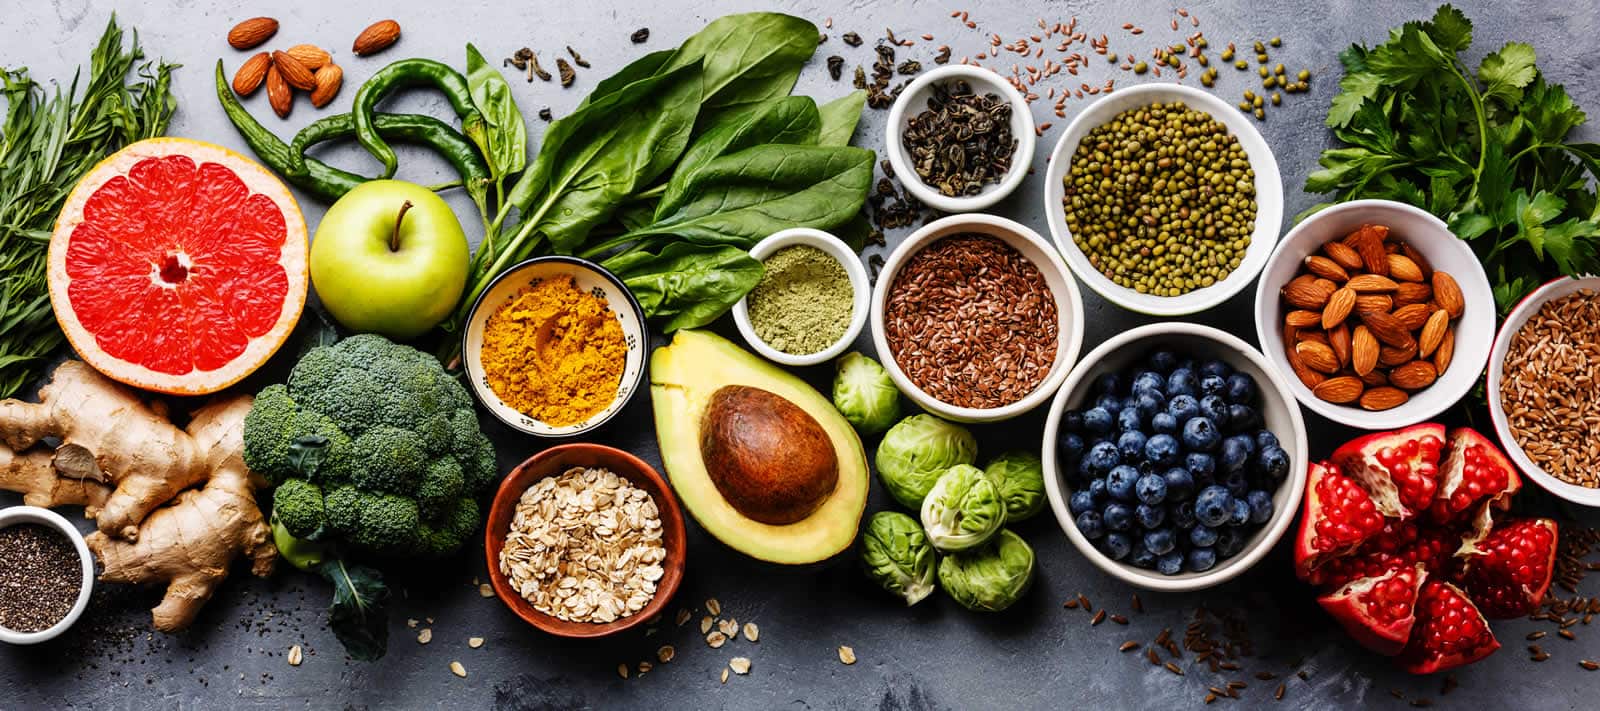 Colourful healthy food selection: fruit, vegetables, seeds, cereals, leaf vegetables